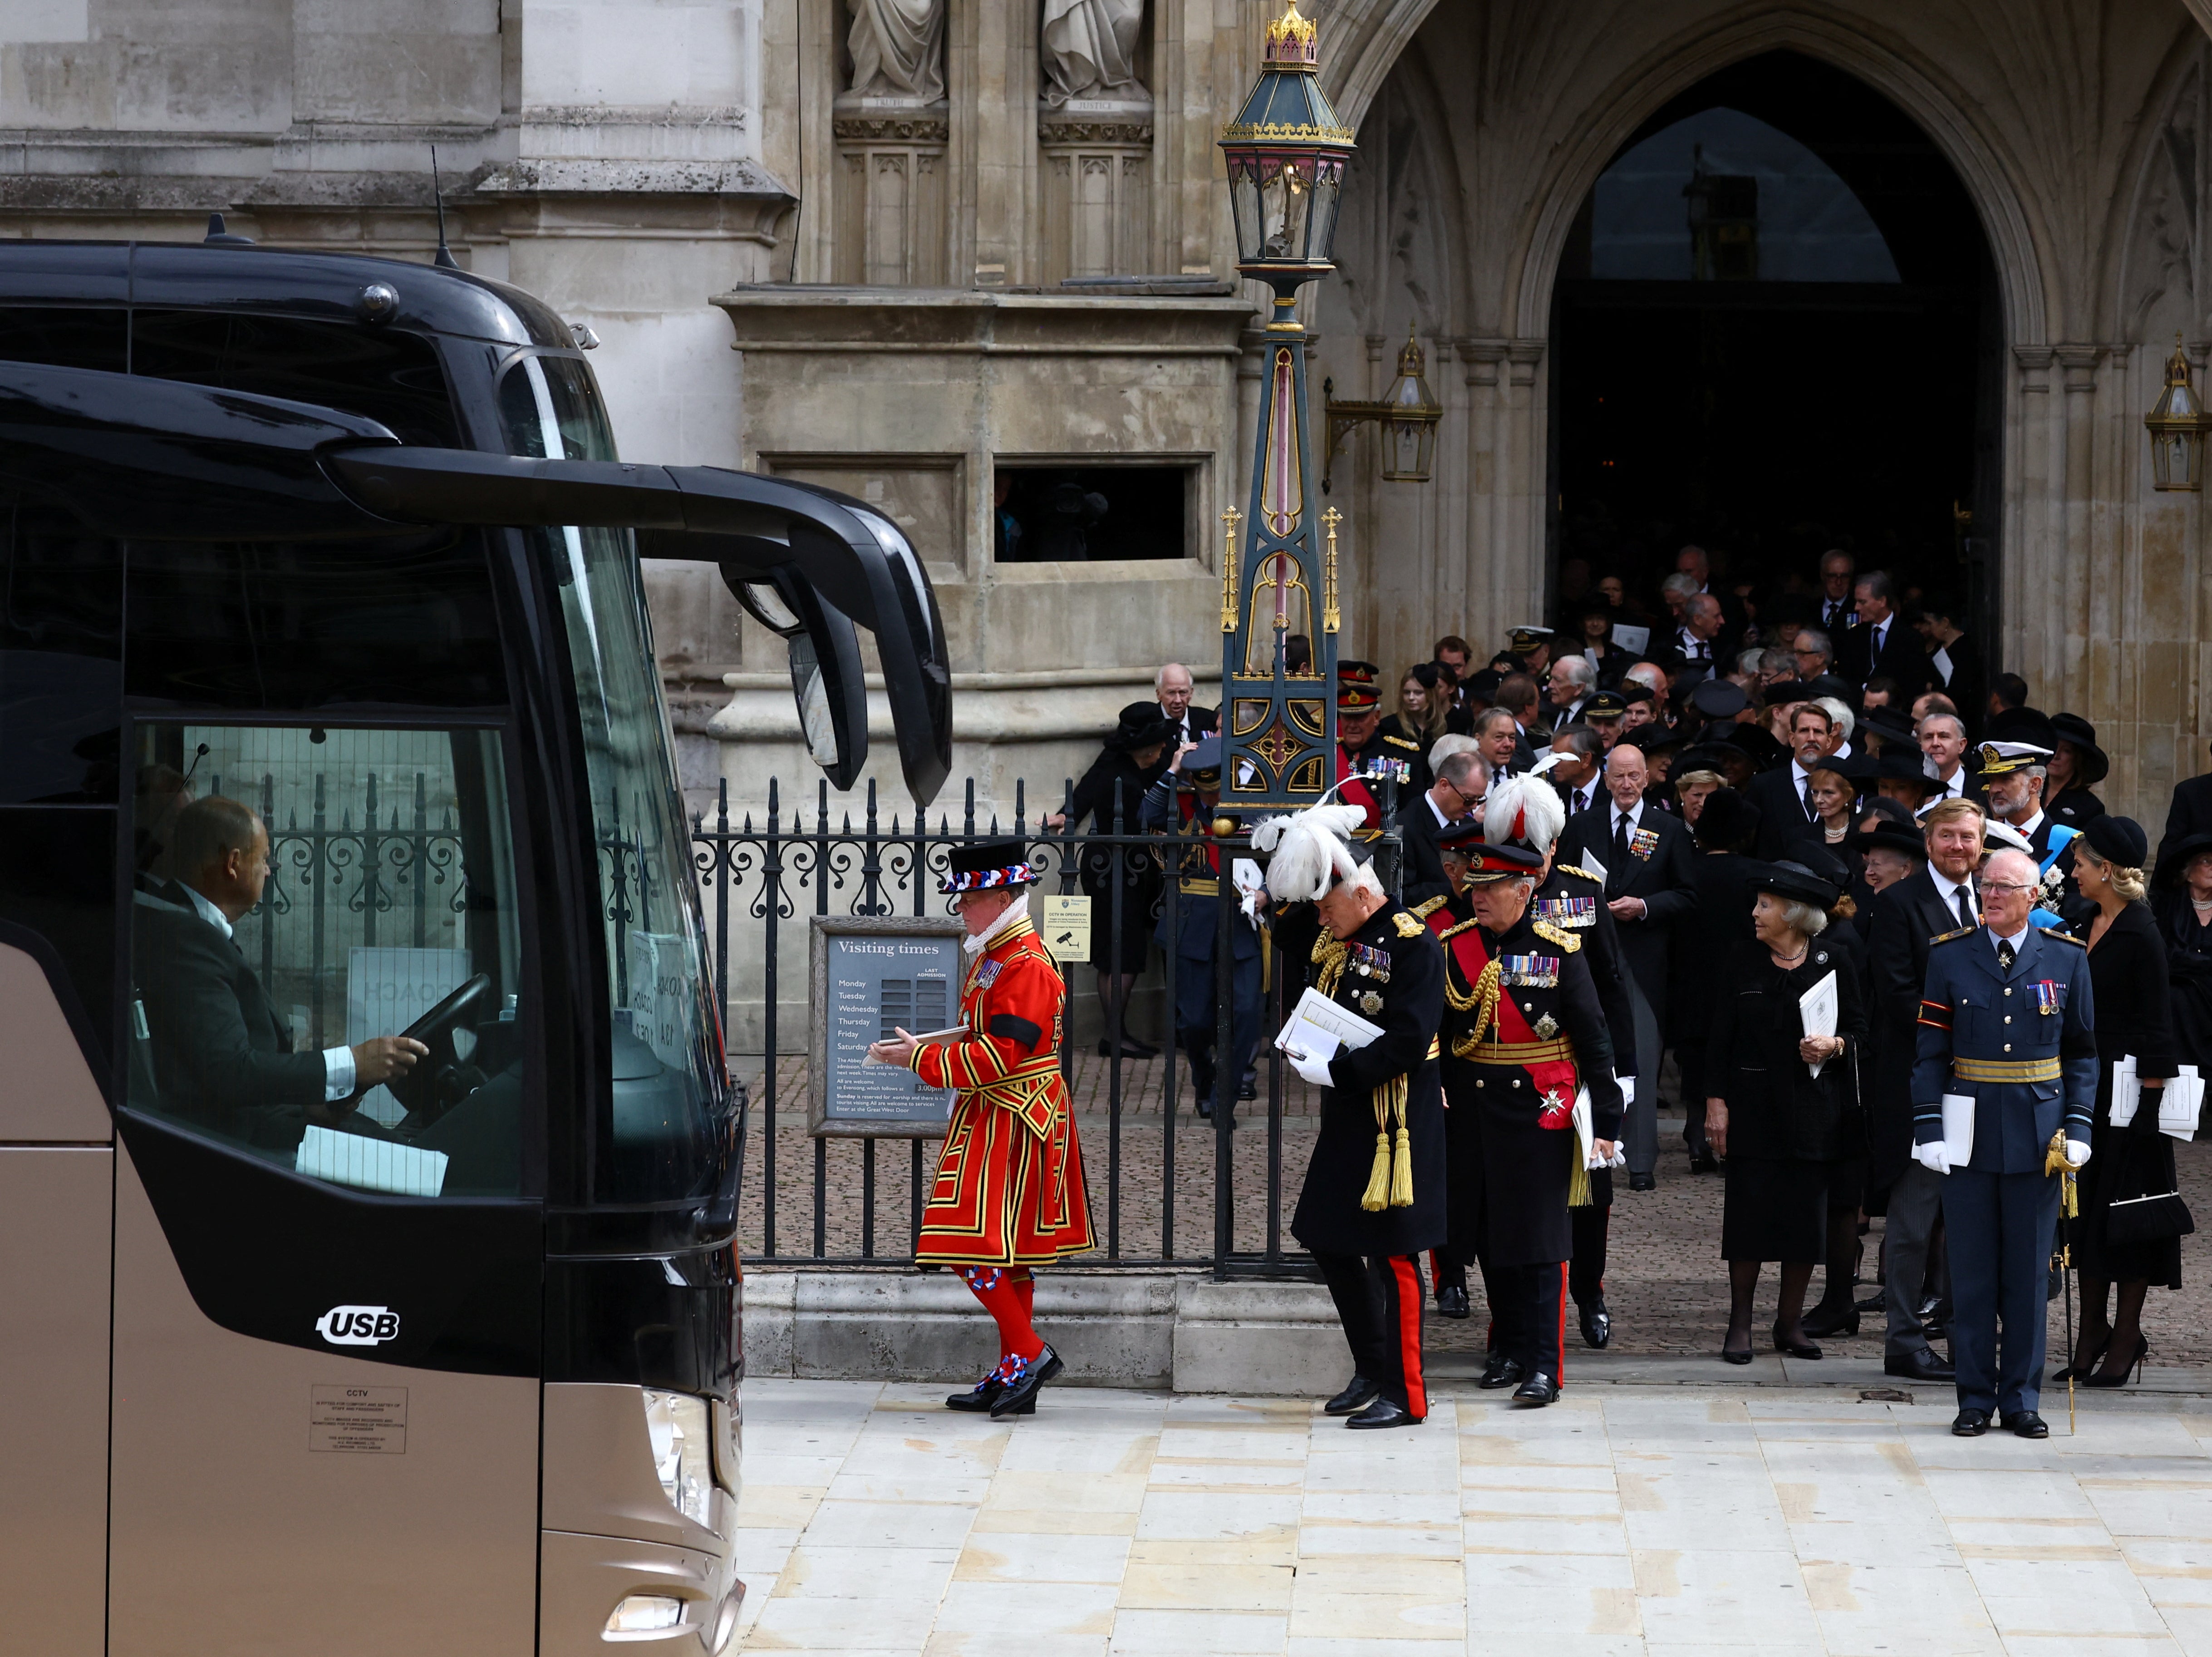 Invitados esperan para abordar un autobús hacia la Abadía de Westminster